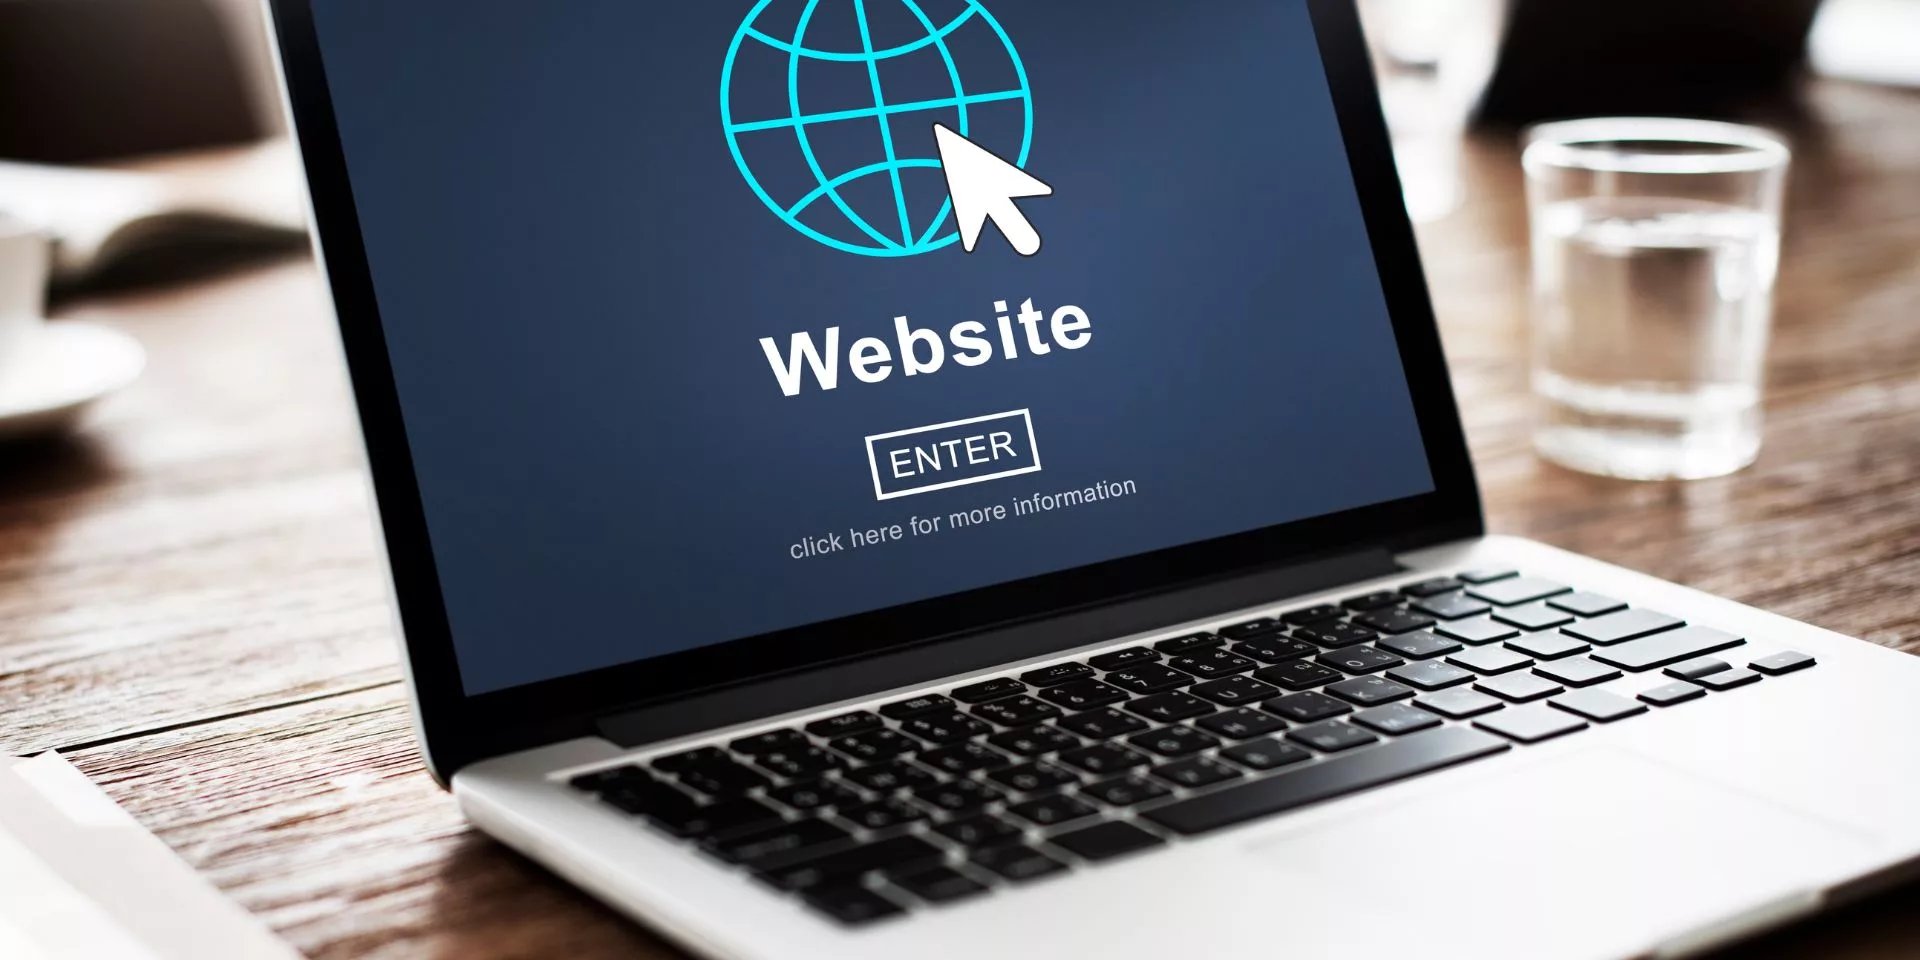 Laptop op een houten bureau met een scherm dat 'Website Enter' weergeeft, symboliseert online aanwezigheid en de digitale toegangspoort voor bedrijven